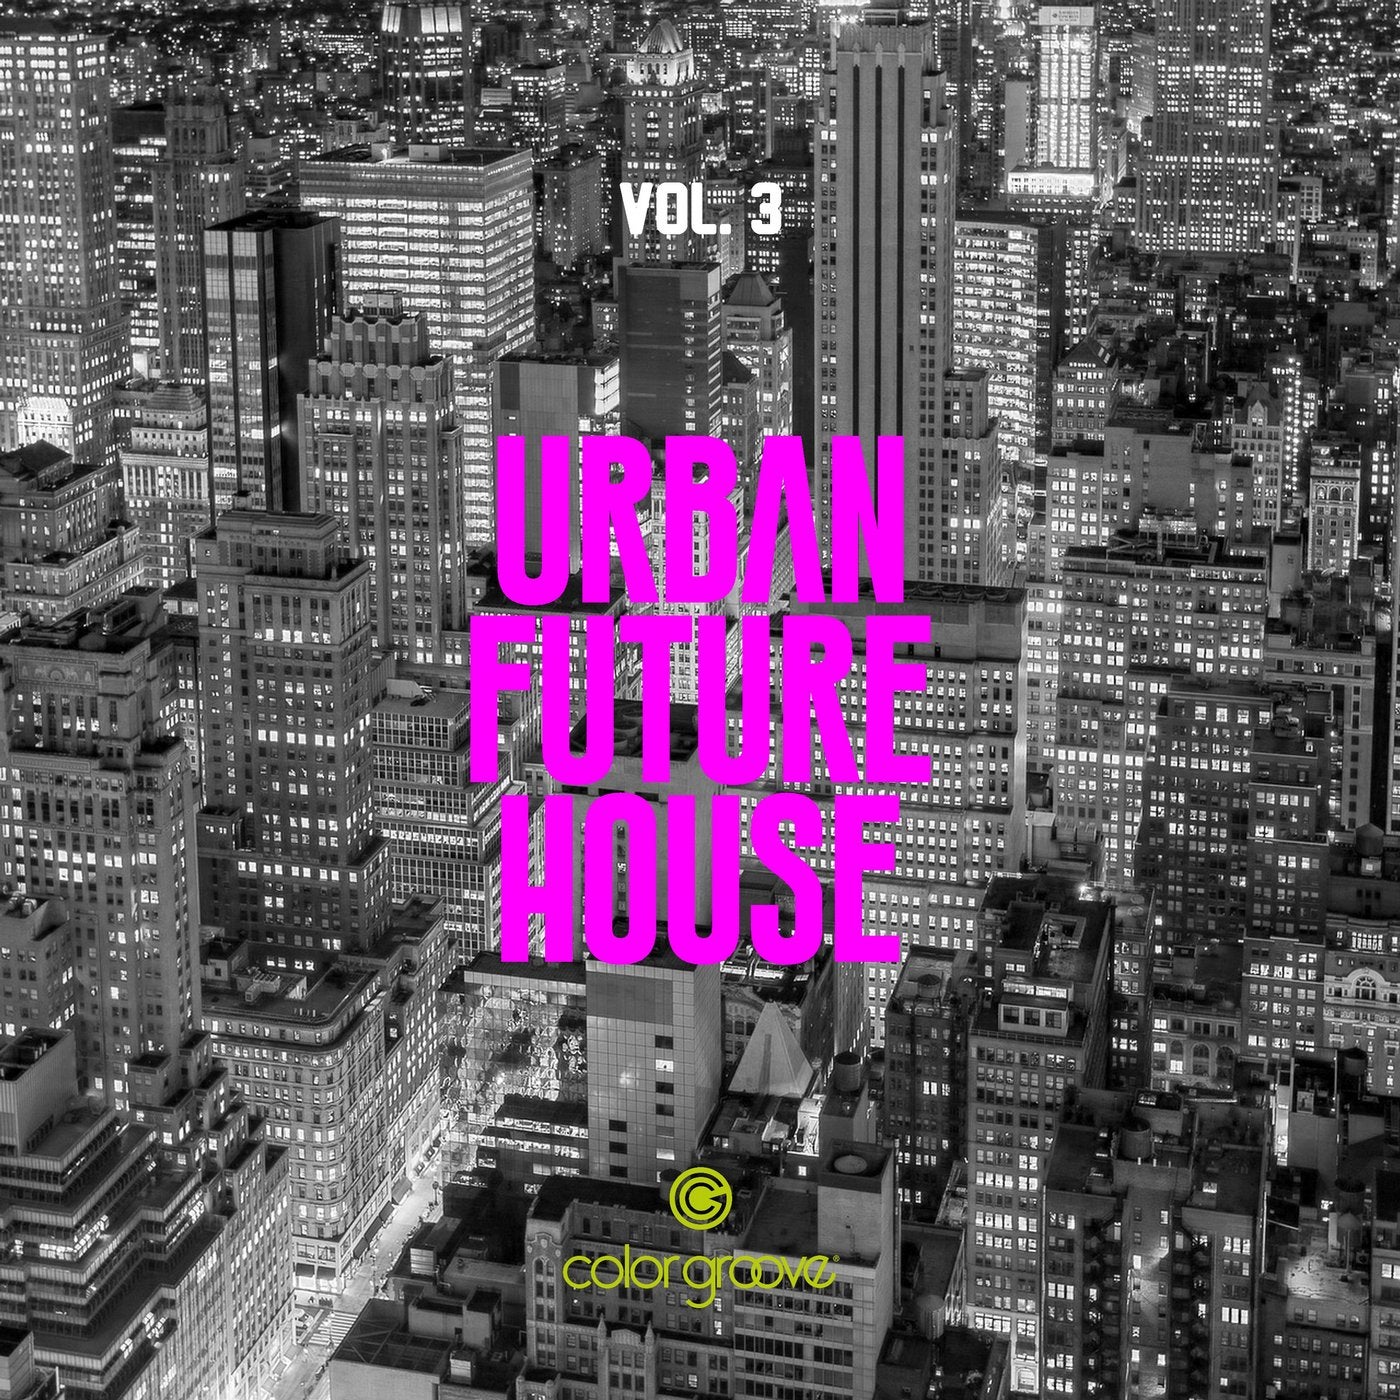 Urban Future House, Vol. 3